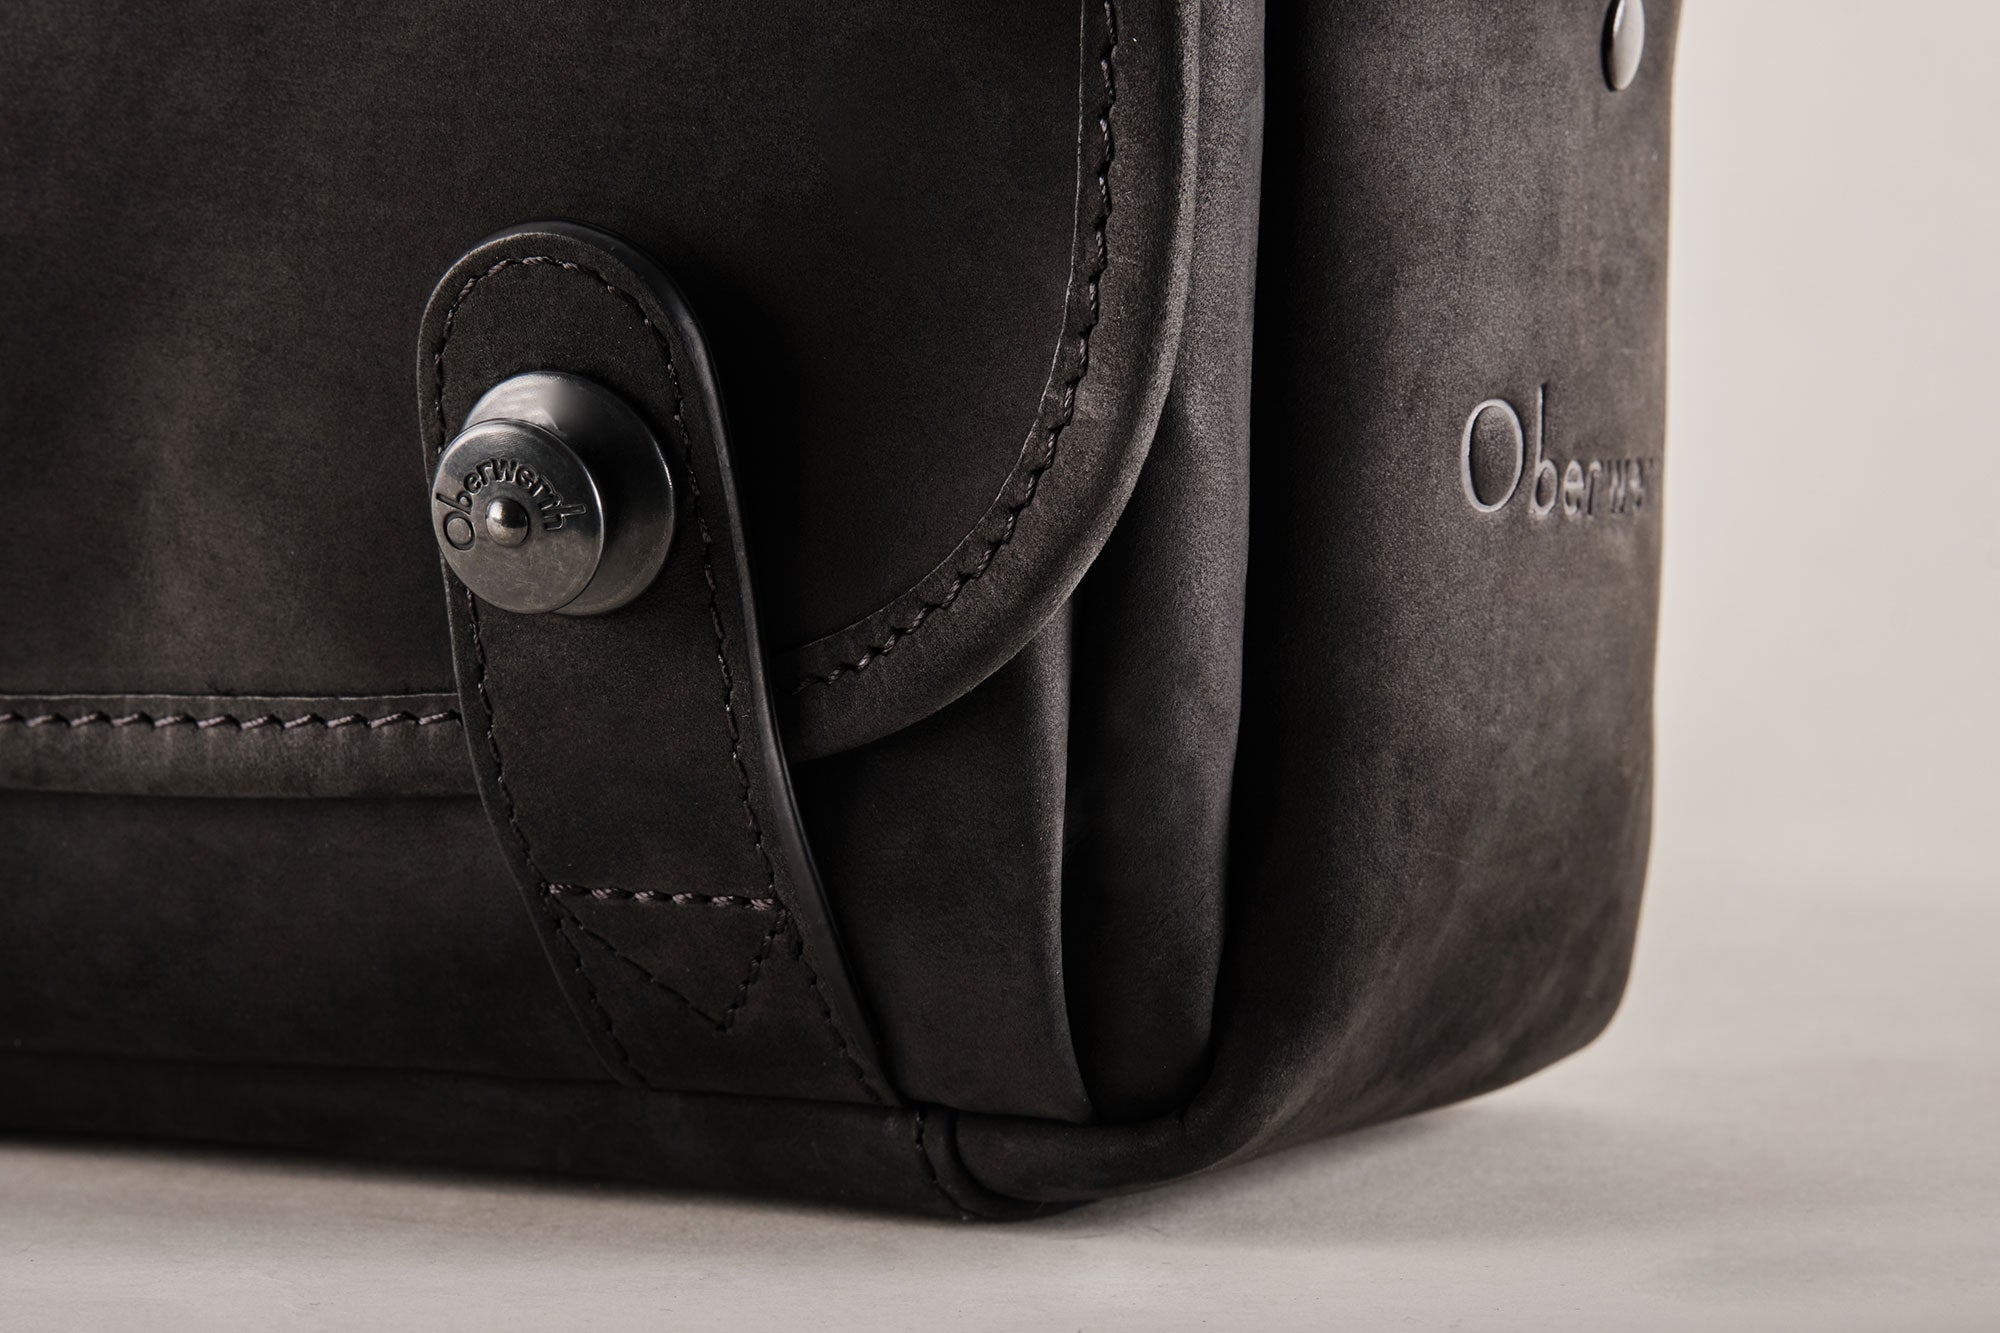 The Q Bag - Leica Q2 bag black !Trade Fair Good!